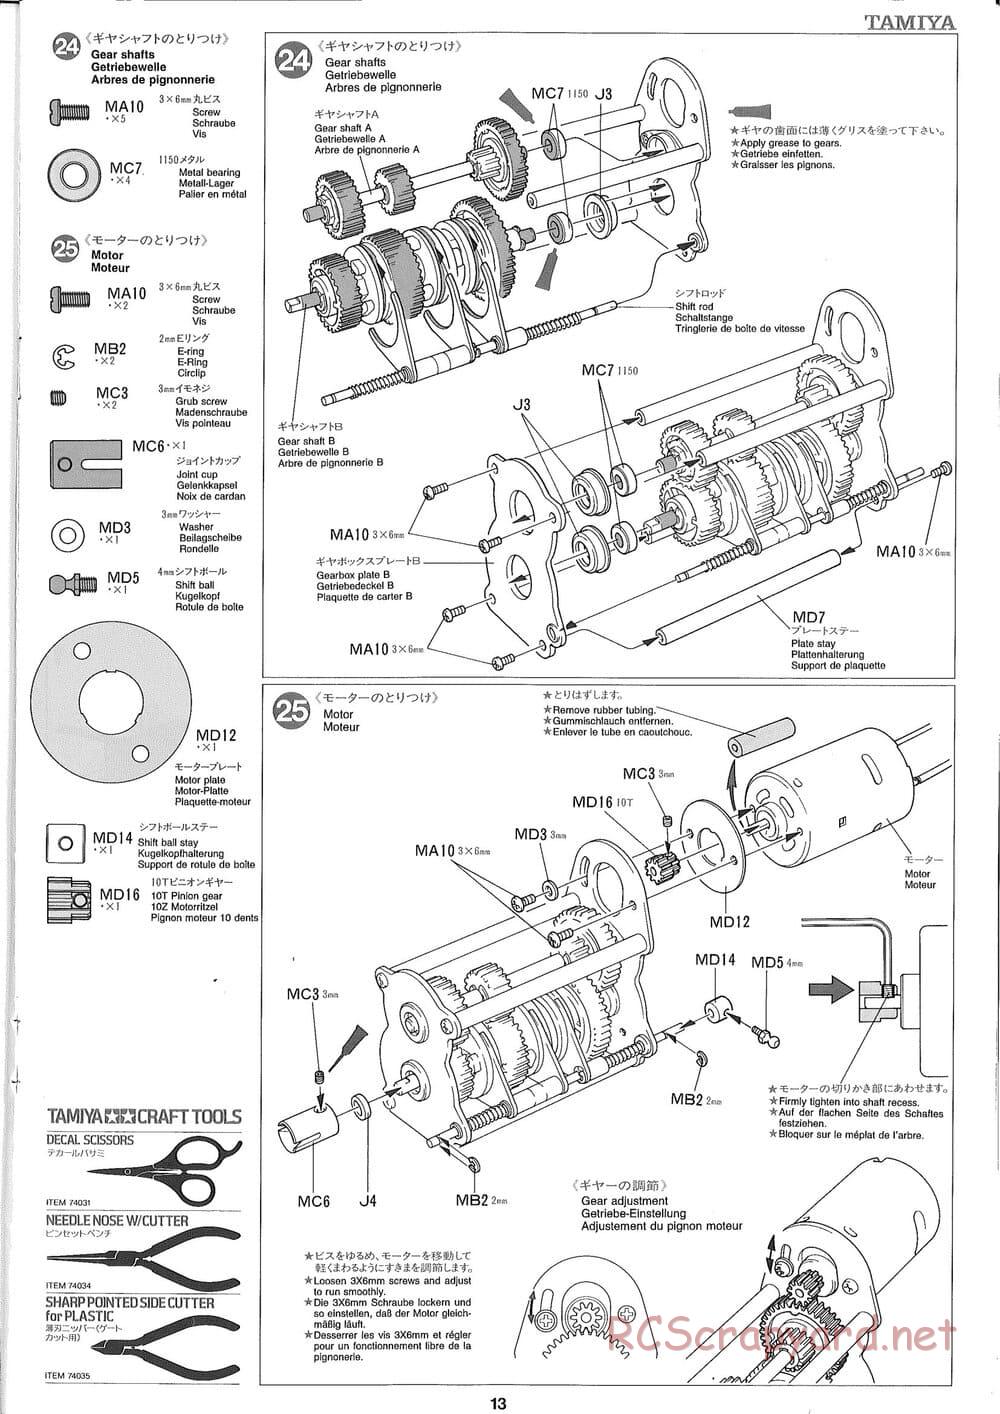 Tamiya - Ford Aeromax - Manual - Page 13